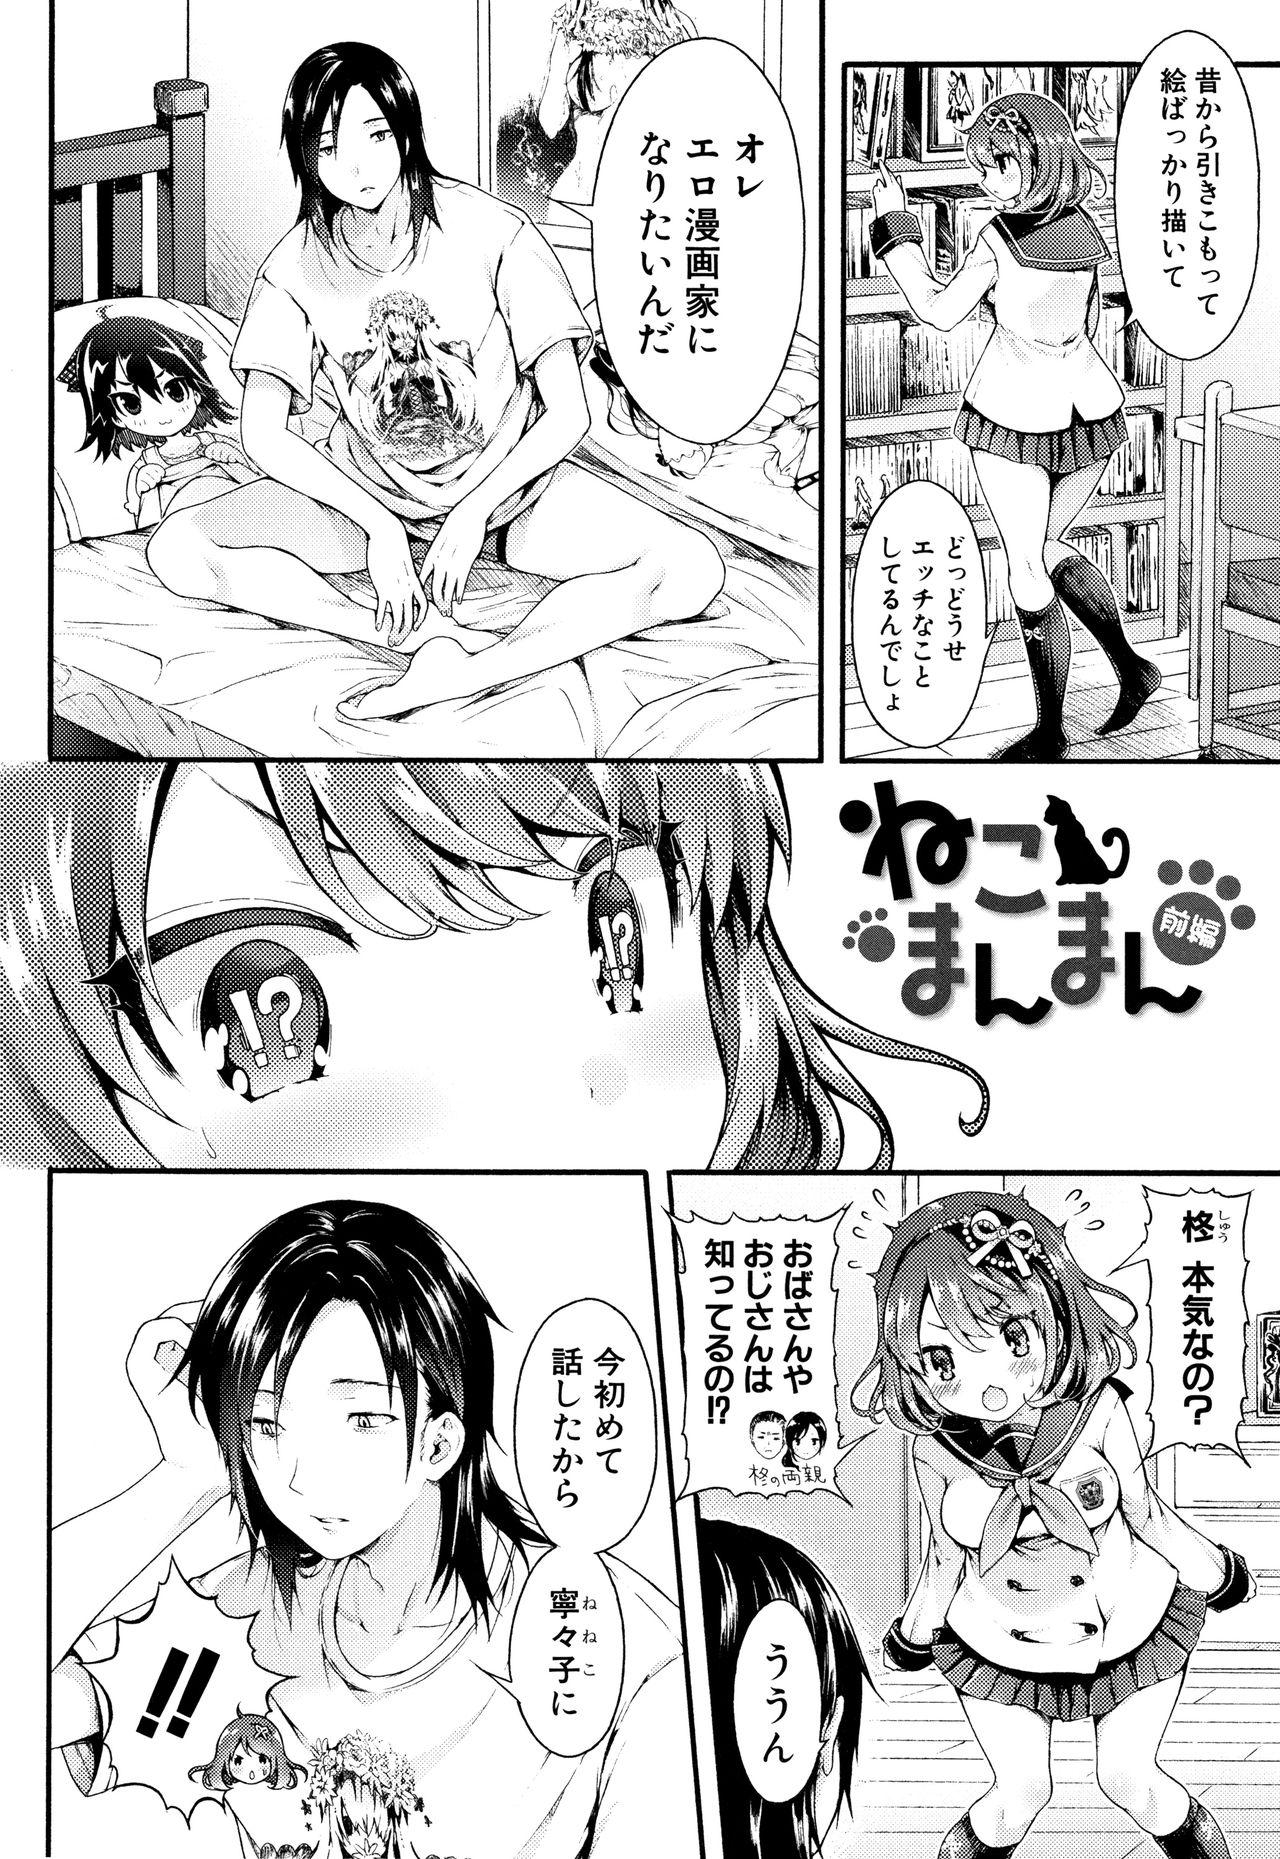 Hot Girls Getting Fucked Osananajimi Sotsugyoushiki  - Page 6